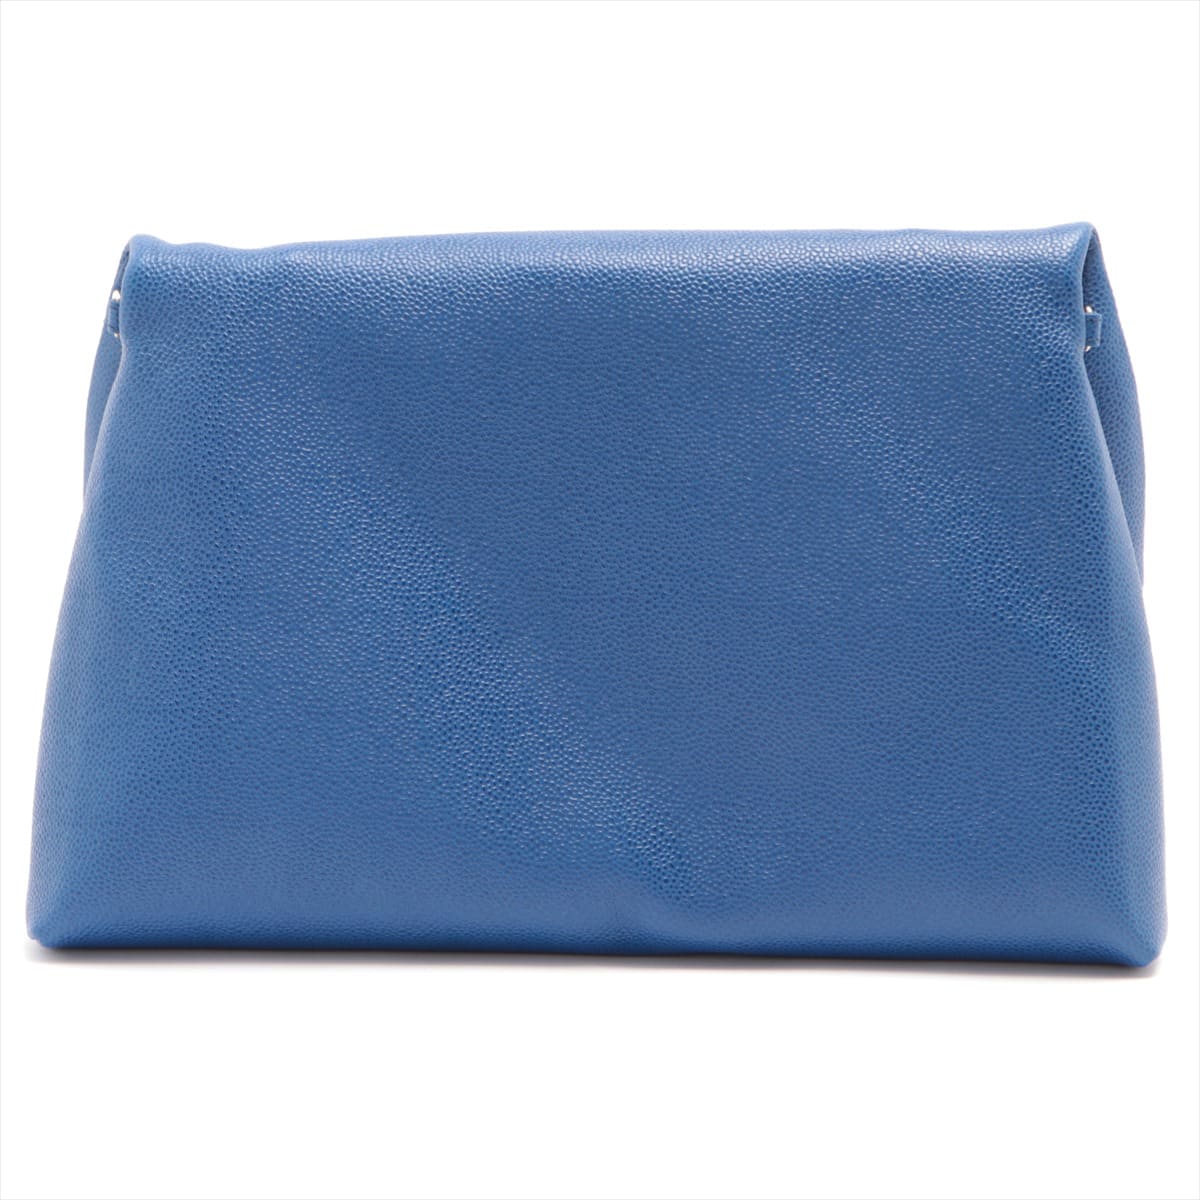 Chopard Lisbon Leather Clutch Blue